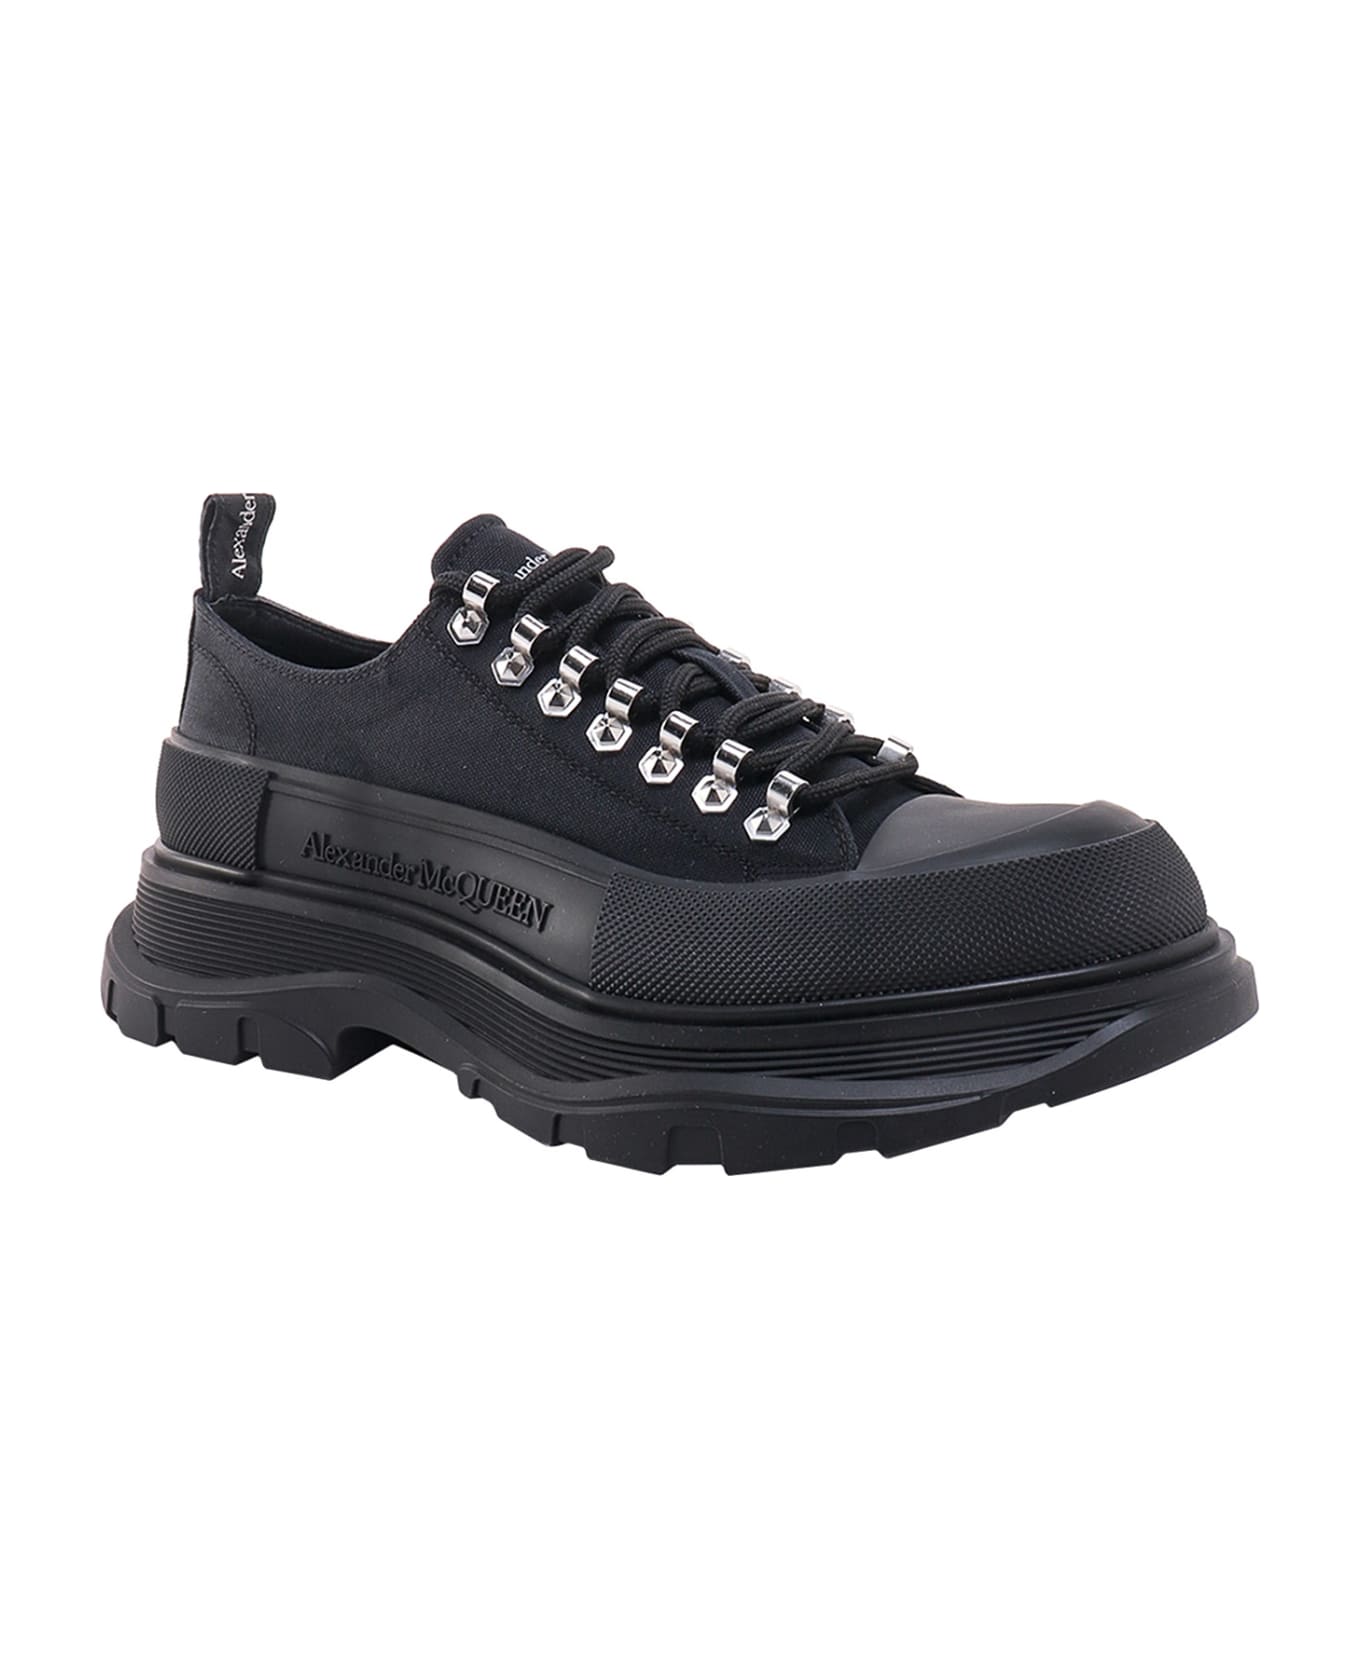 Alexander McQueen Tread Slick Sneakers - Black スニーカー